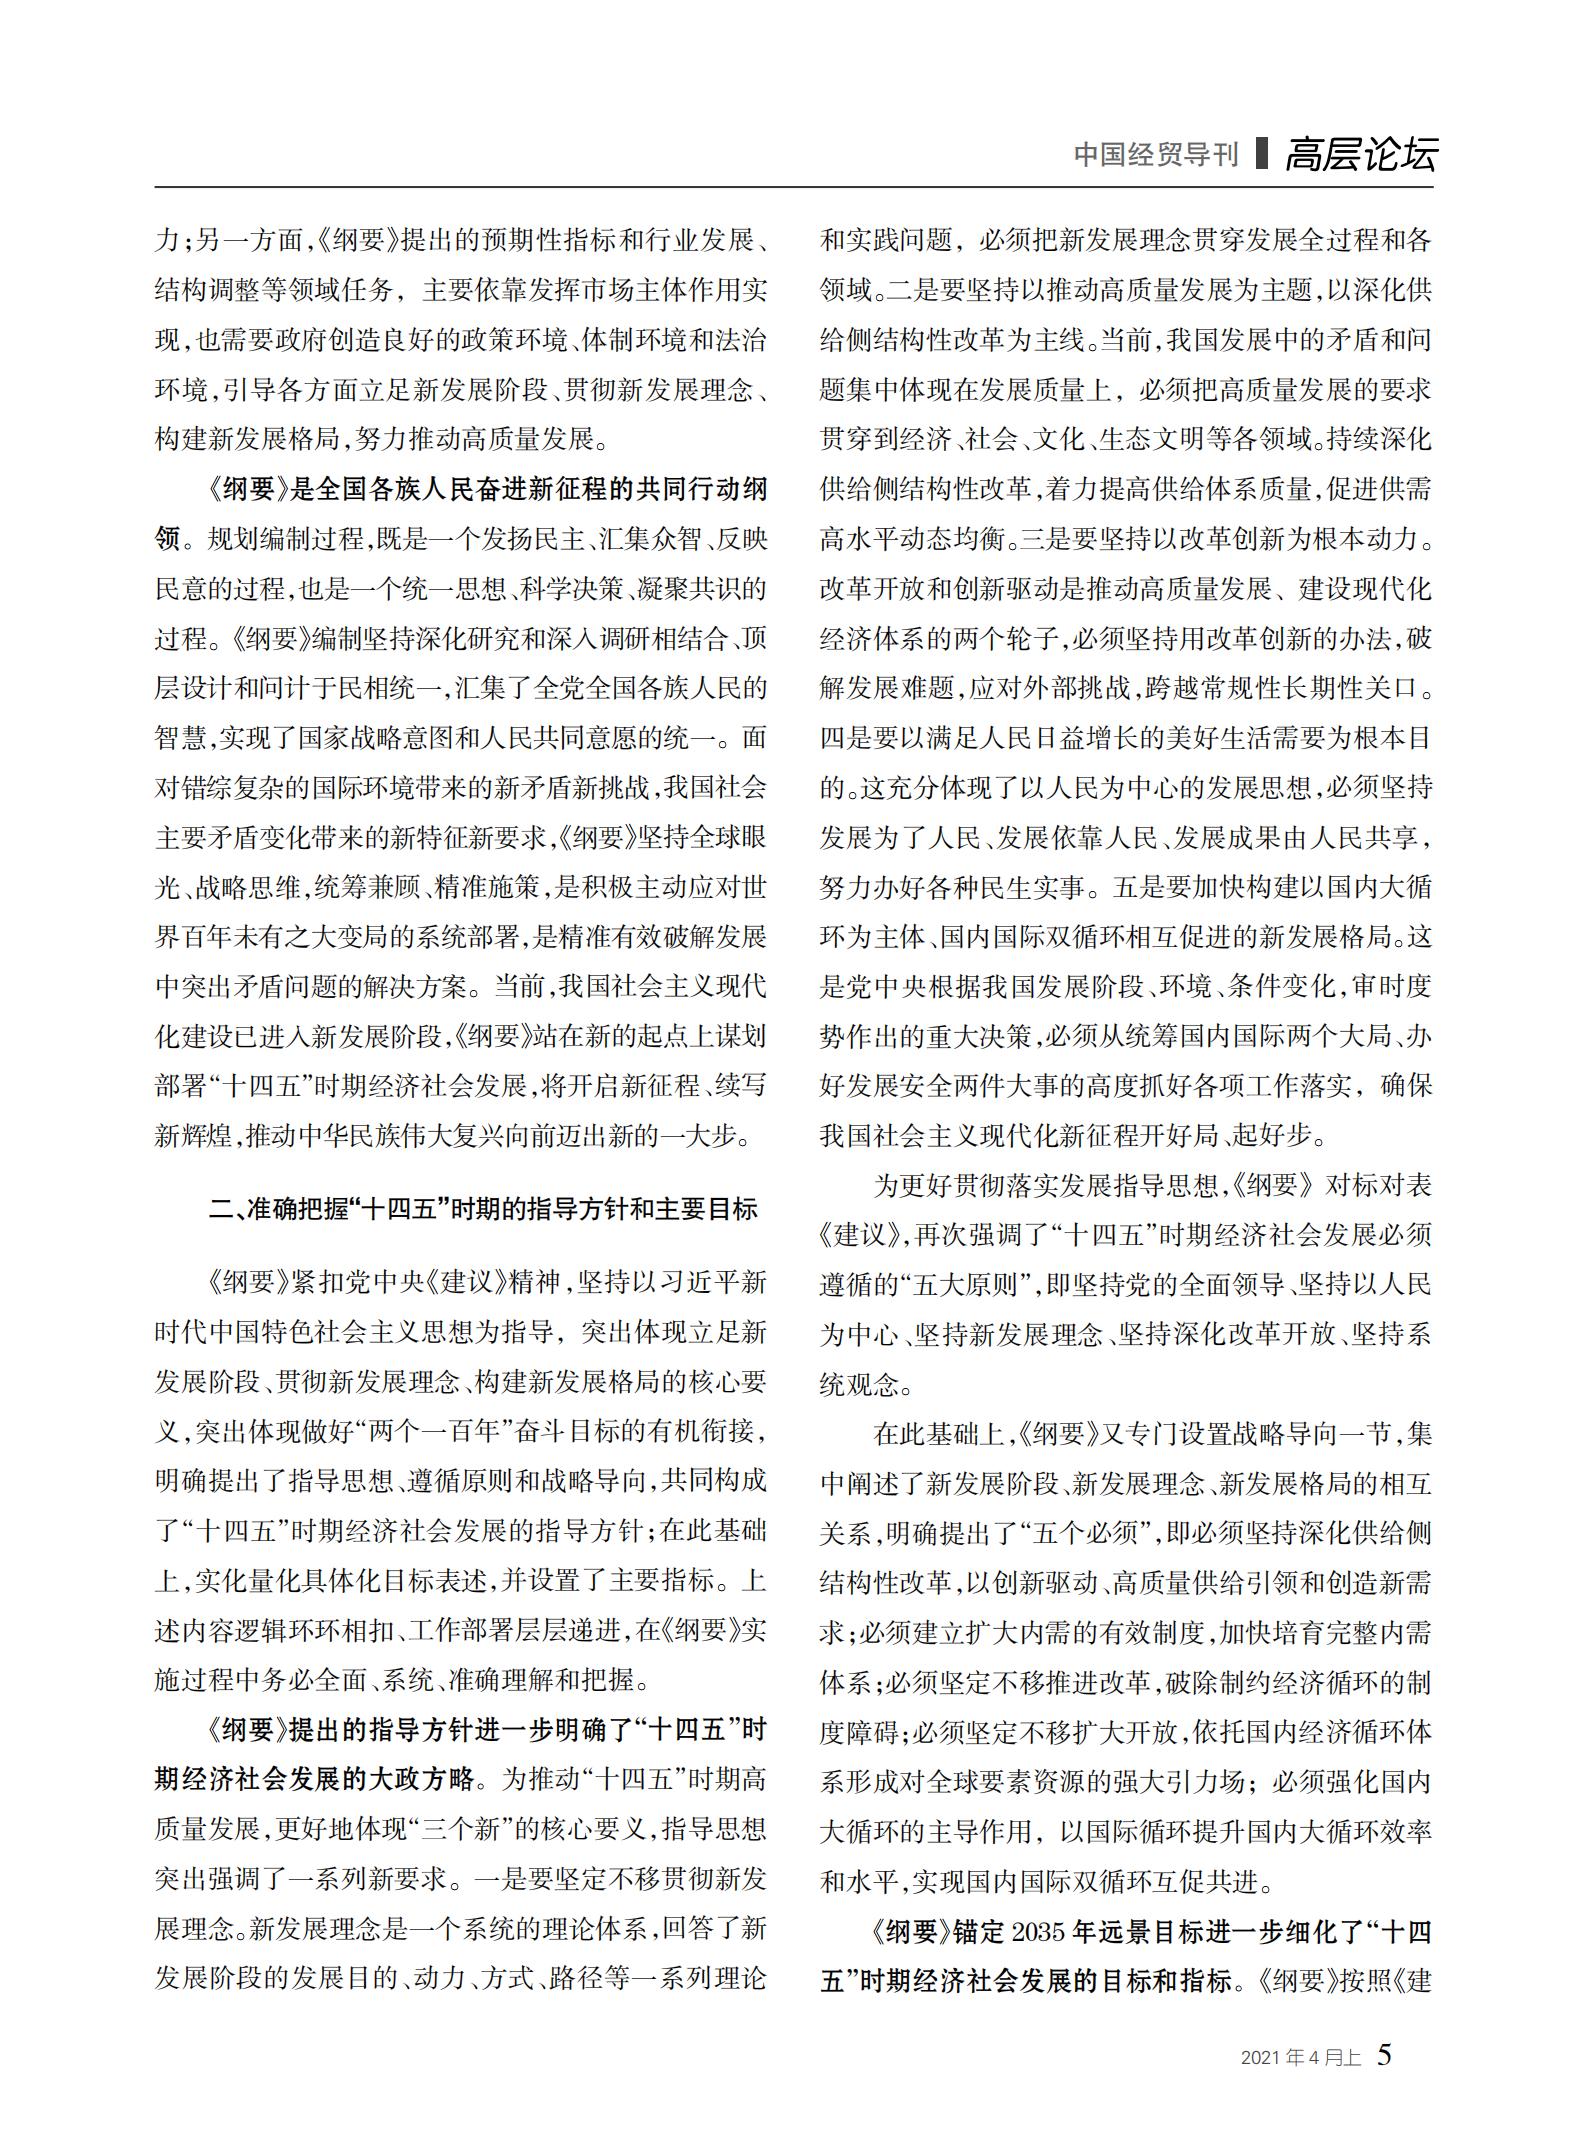 中国经贸导刊2021-4上印刷_04.jpg